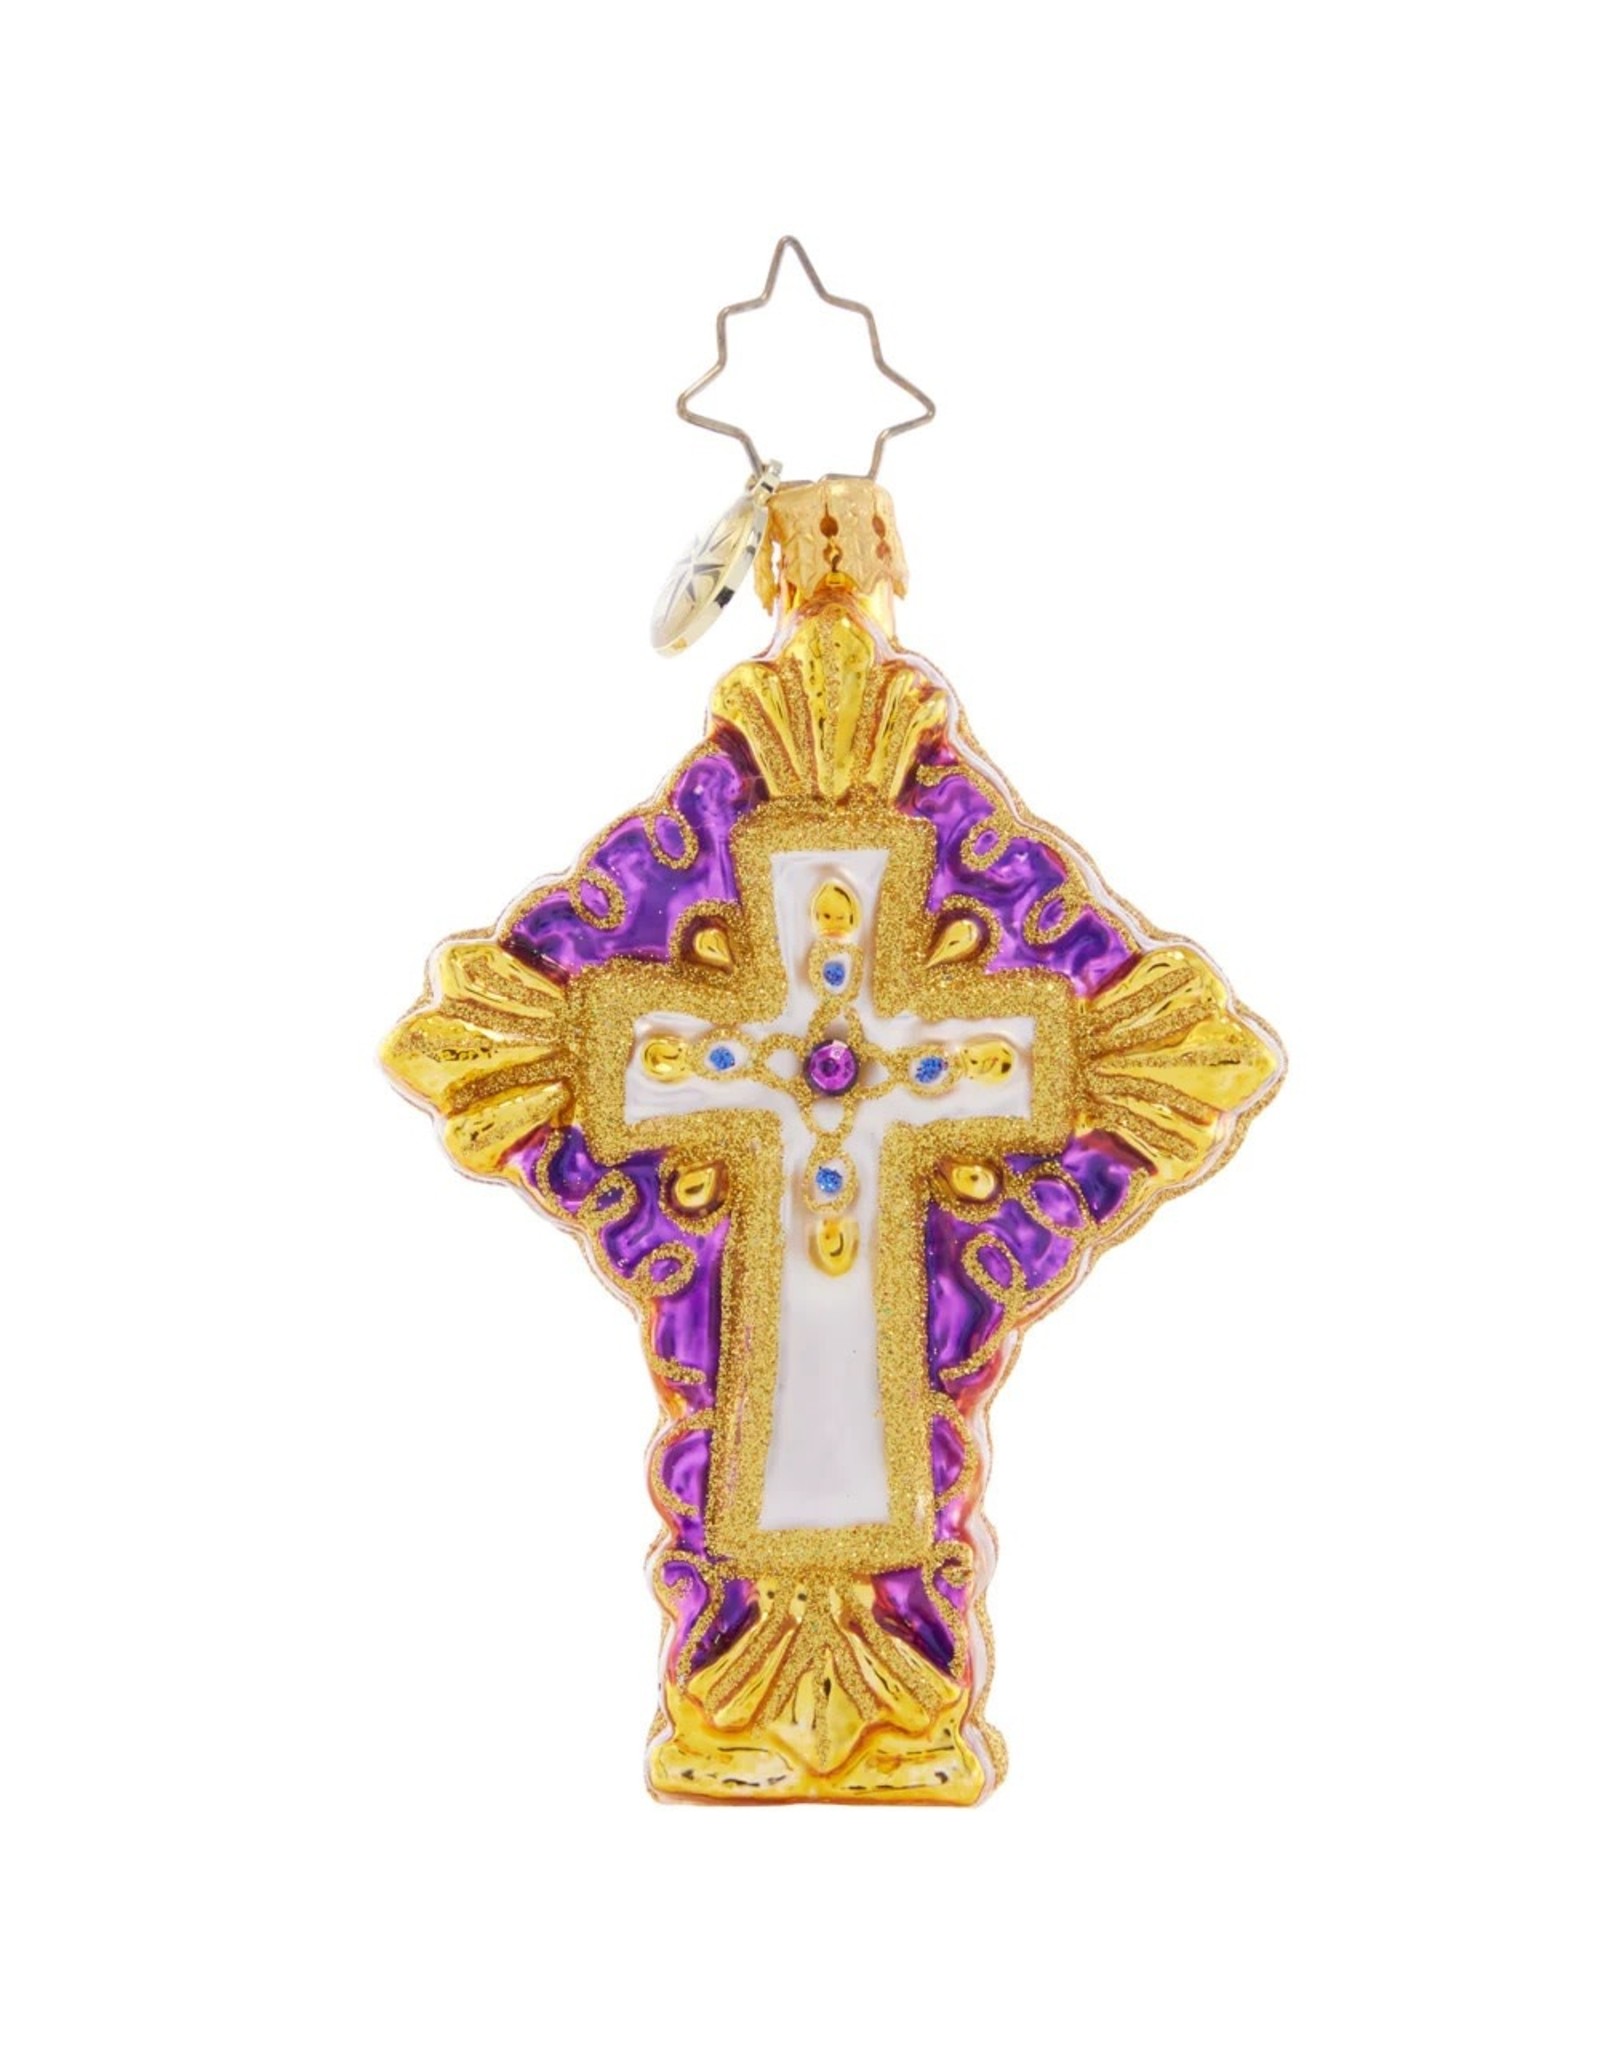 Christopher Radko Golden Grace Cross Gem Christmas Ornament